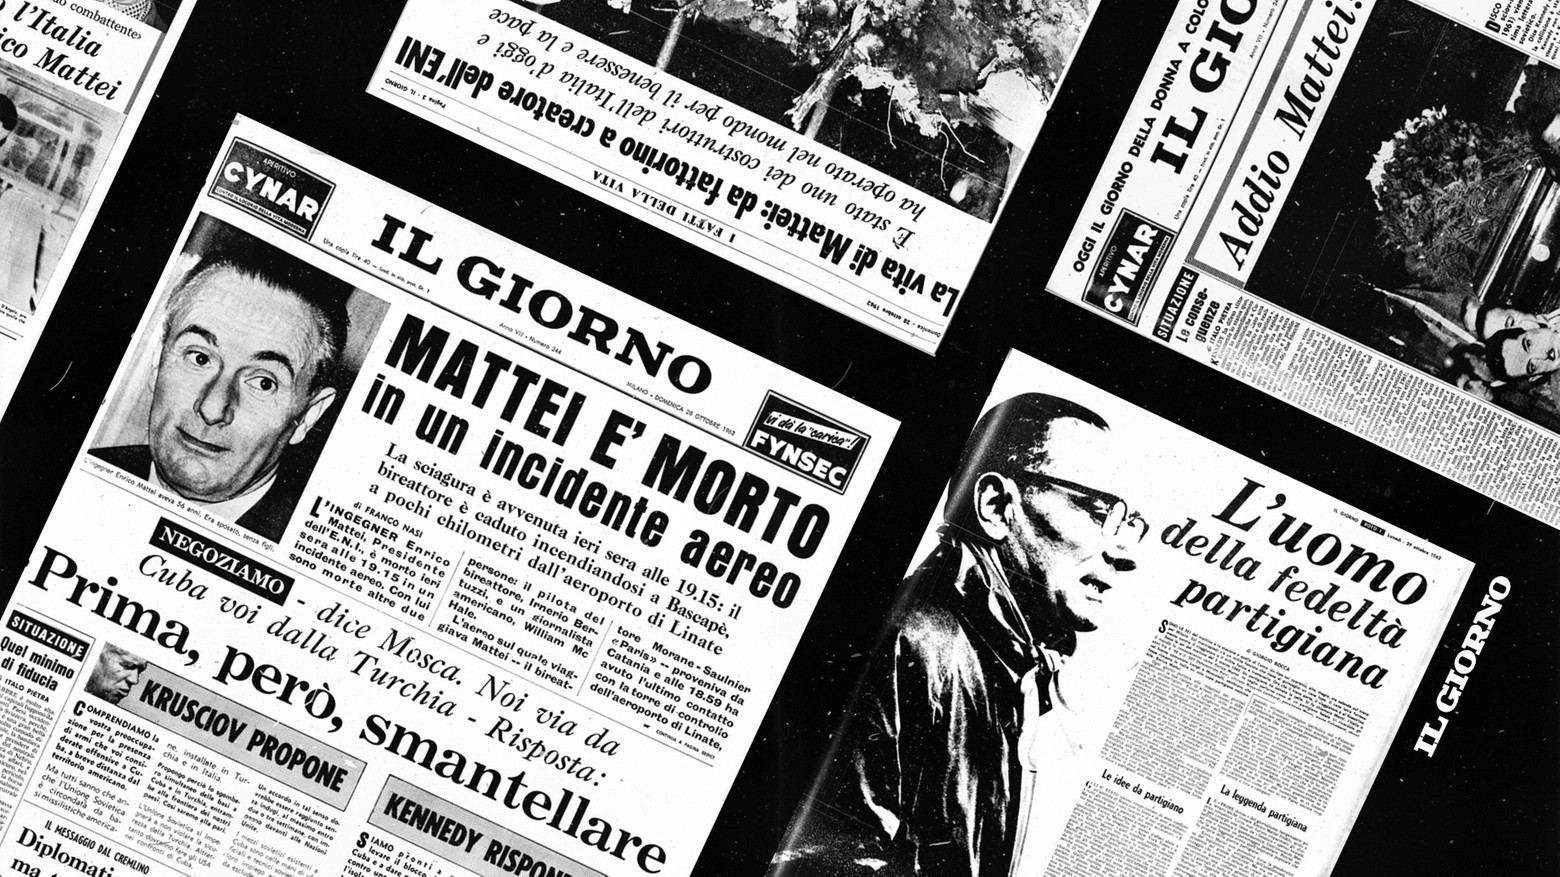 Enrico Mattei fondò il quotidiano Il Giorno nel 1956